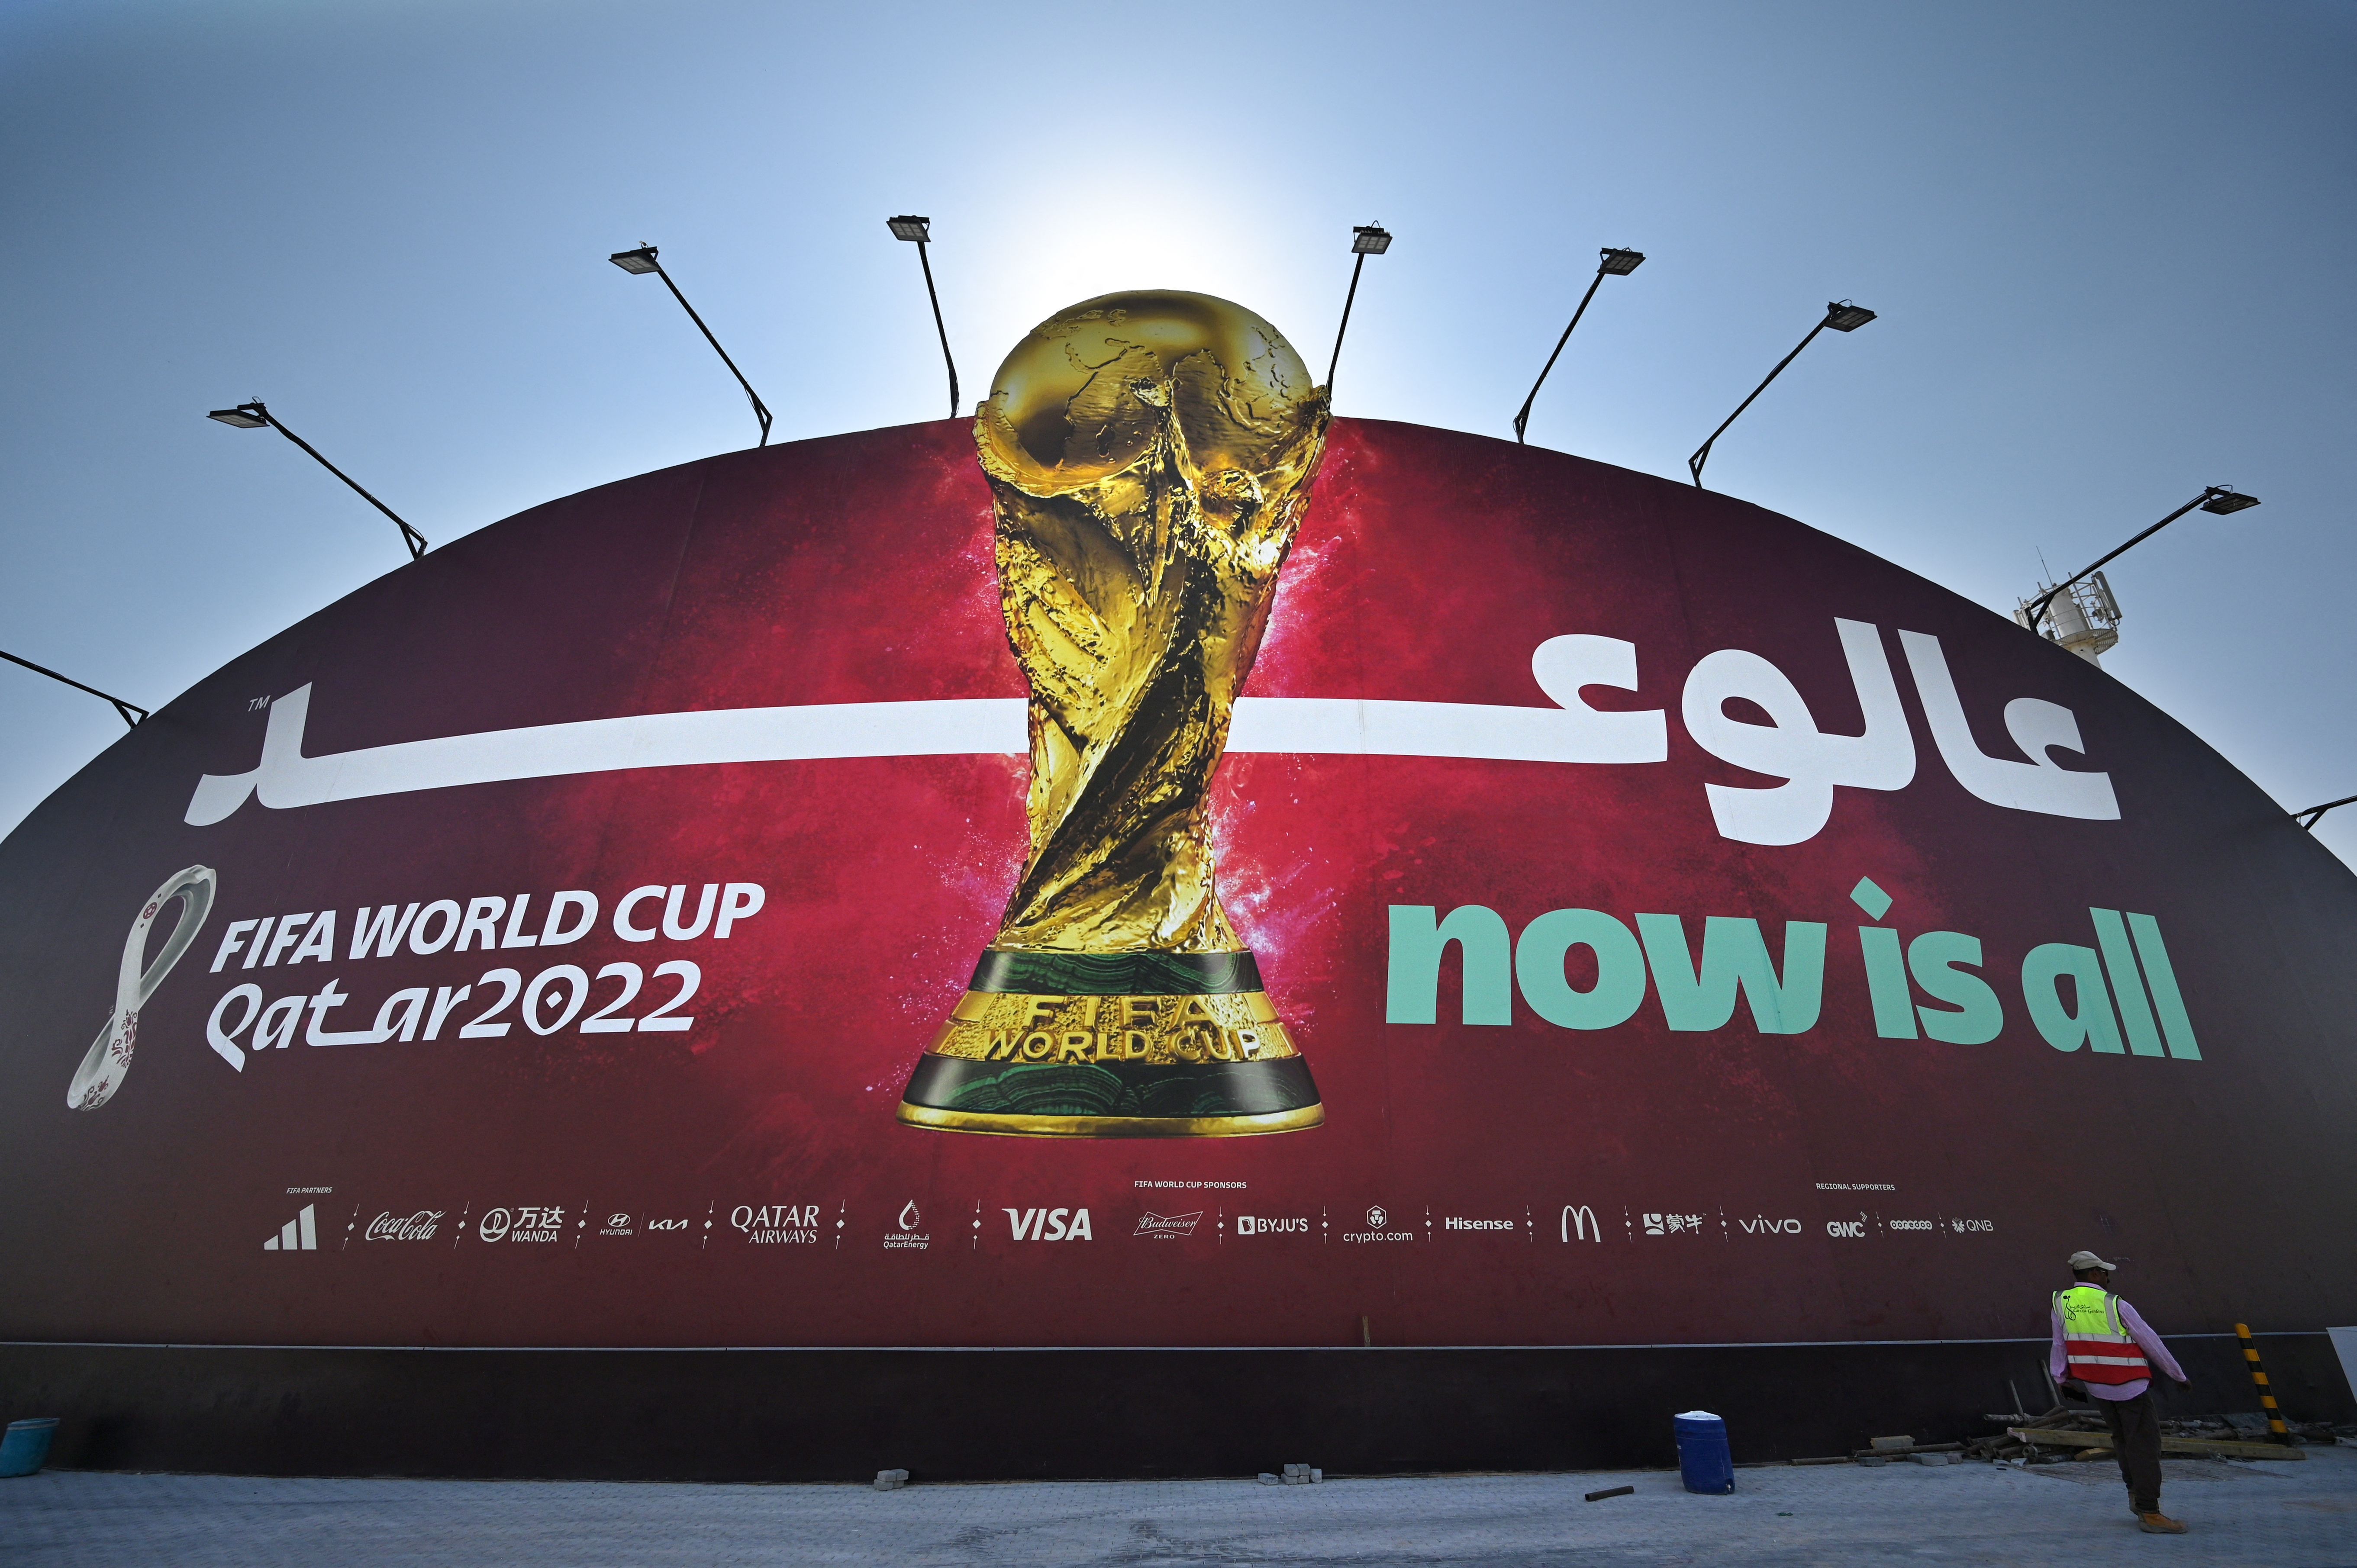 Qatar 2022 FIFA World Cup football tournament billboard